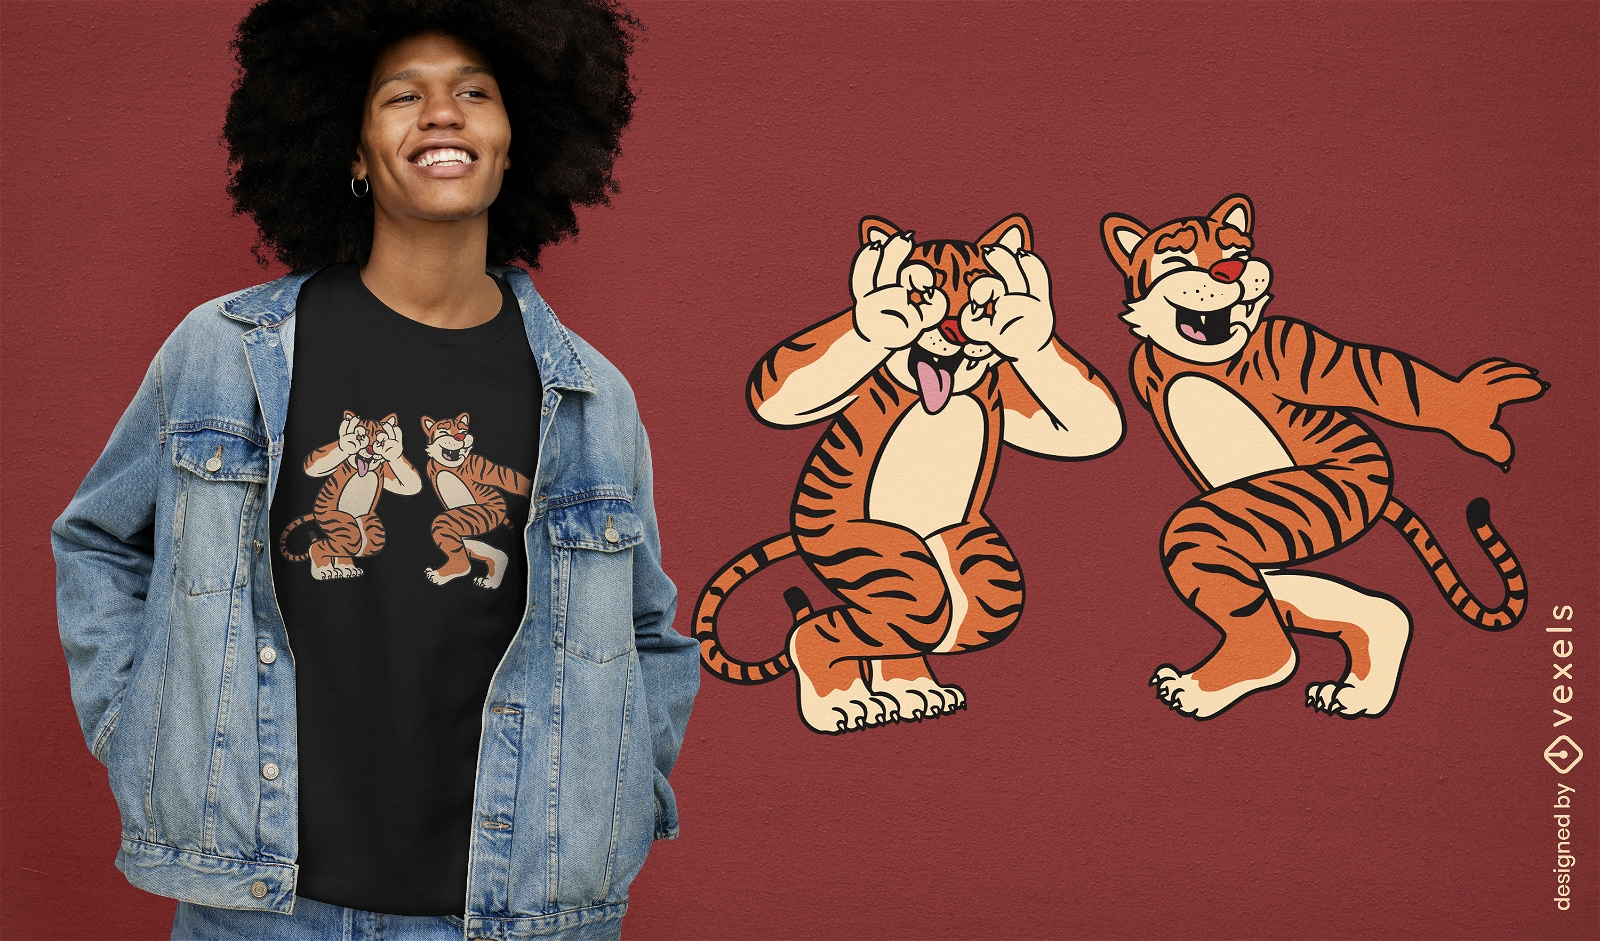 Design engra?ado de camiseta com dois tigres